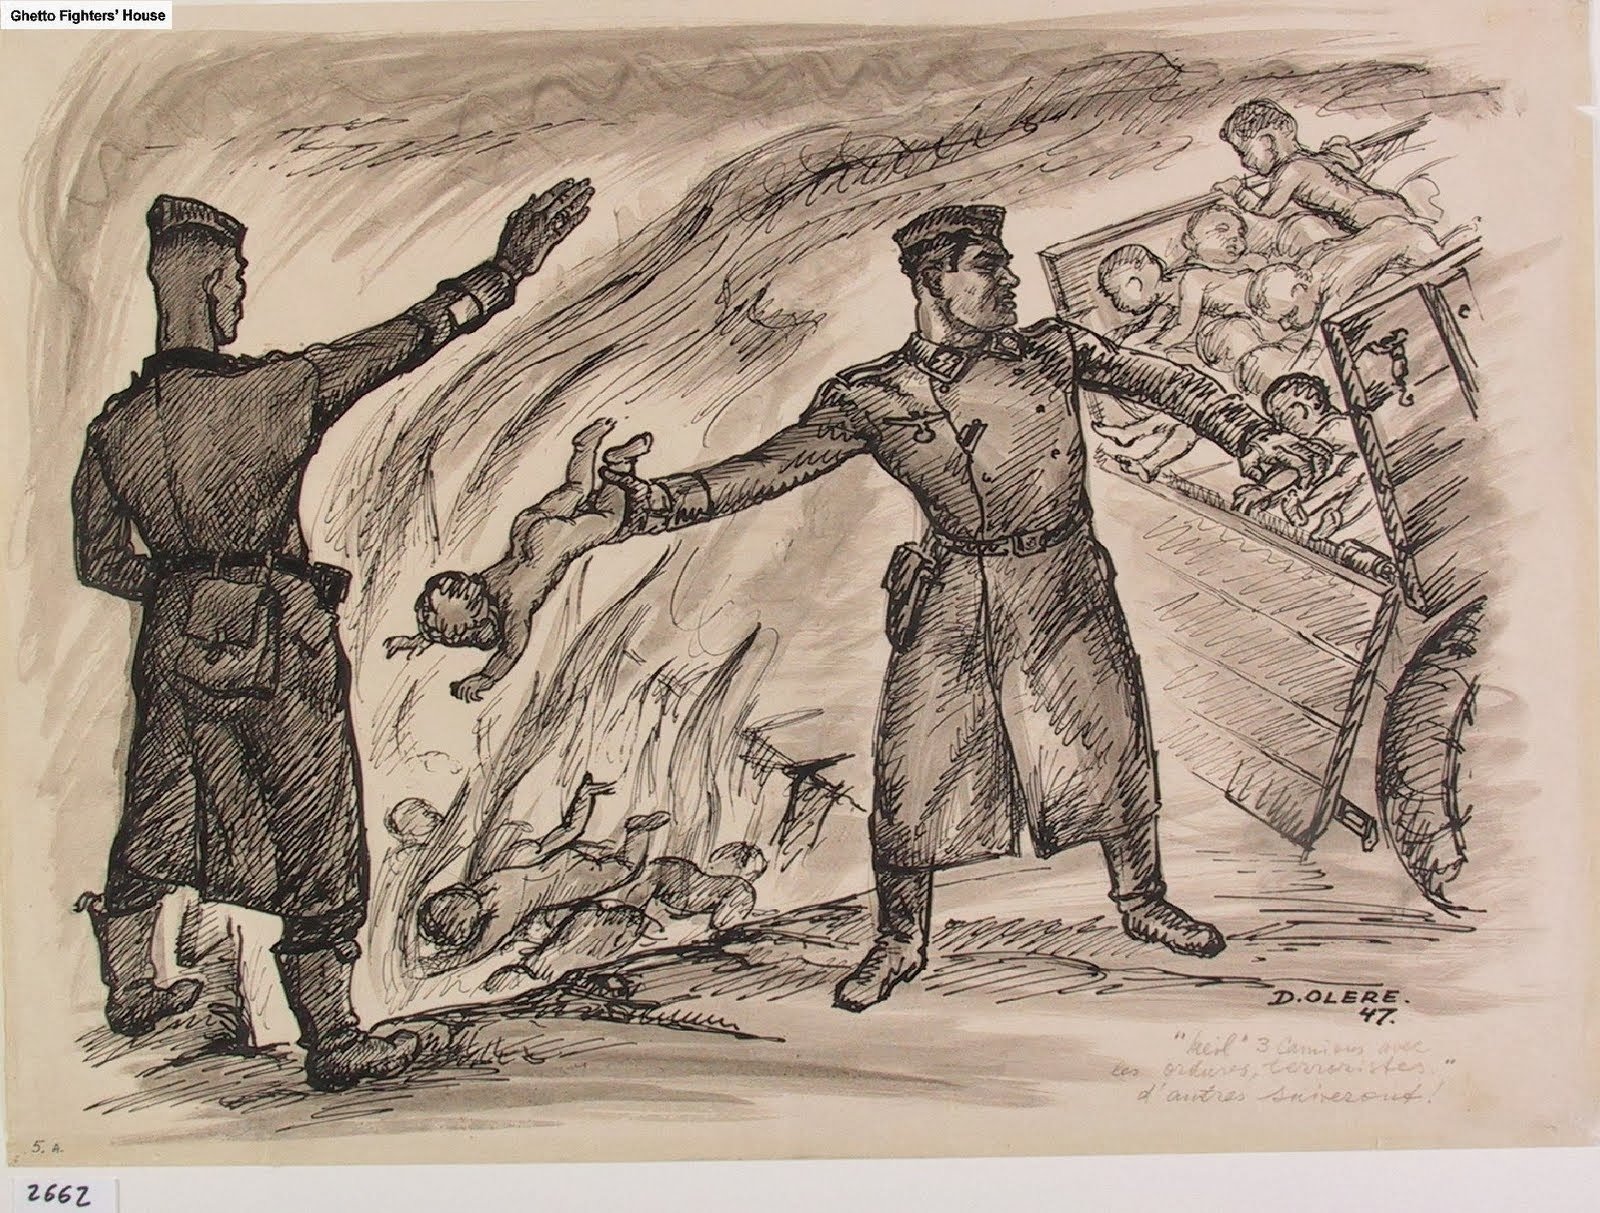 Рисование на тему Холокост